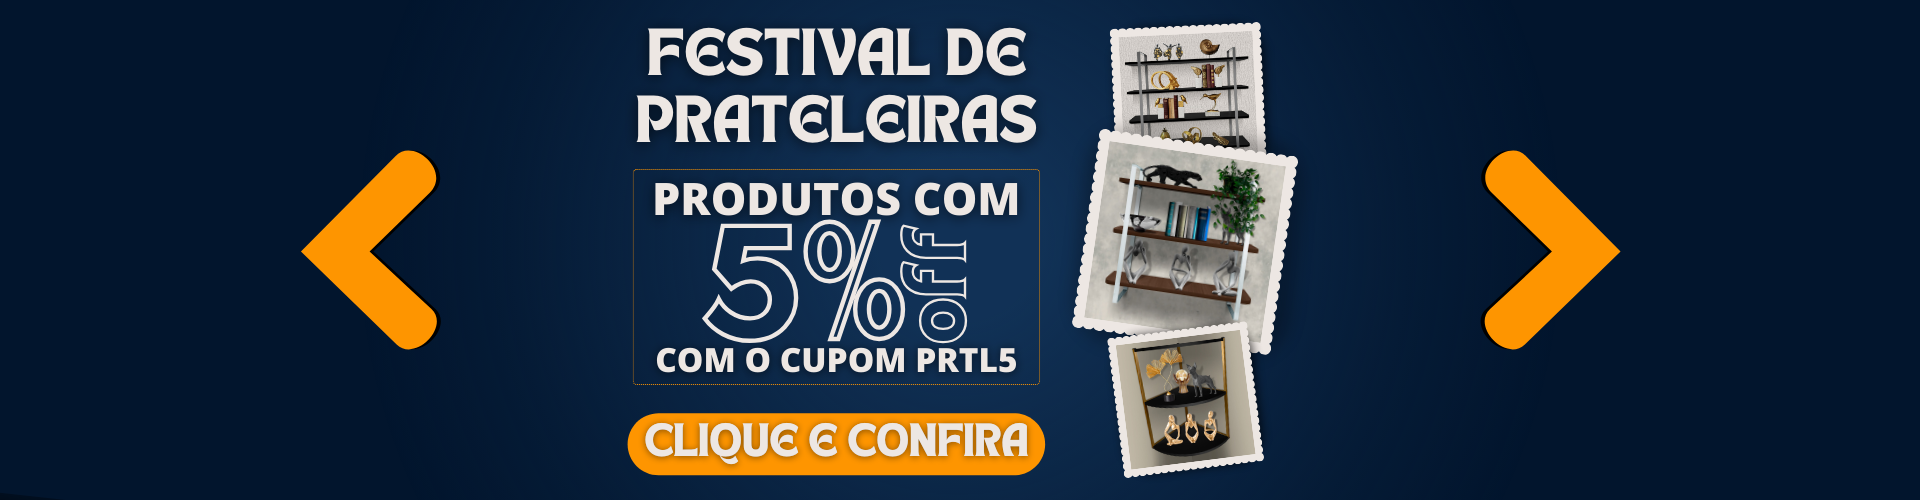 Festival de Prateleiras - Cupom 5%OFF